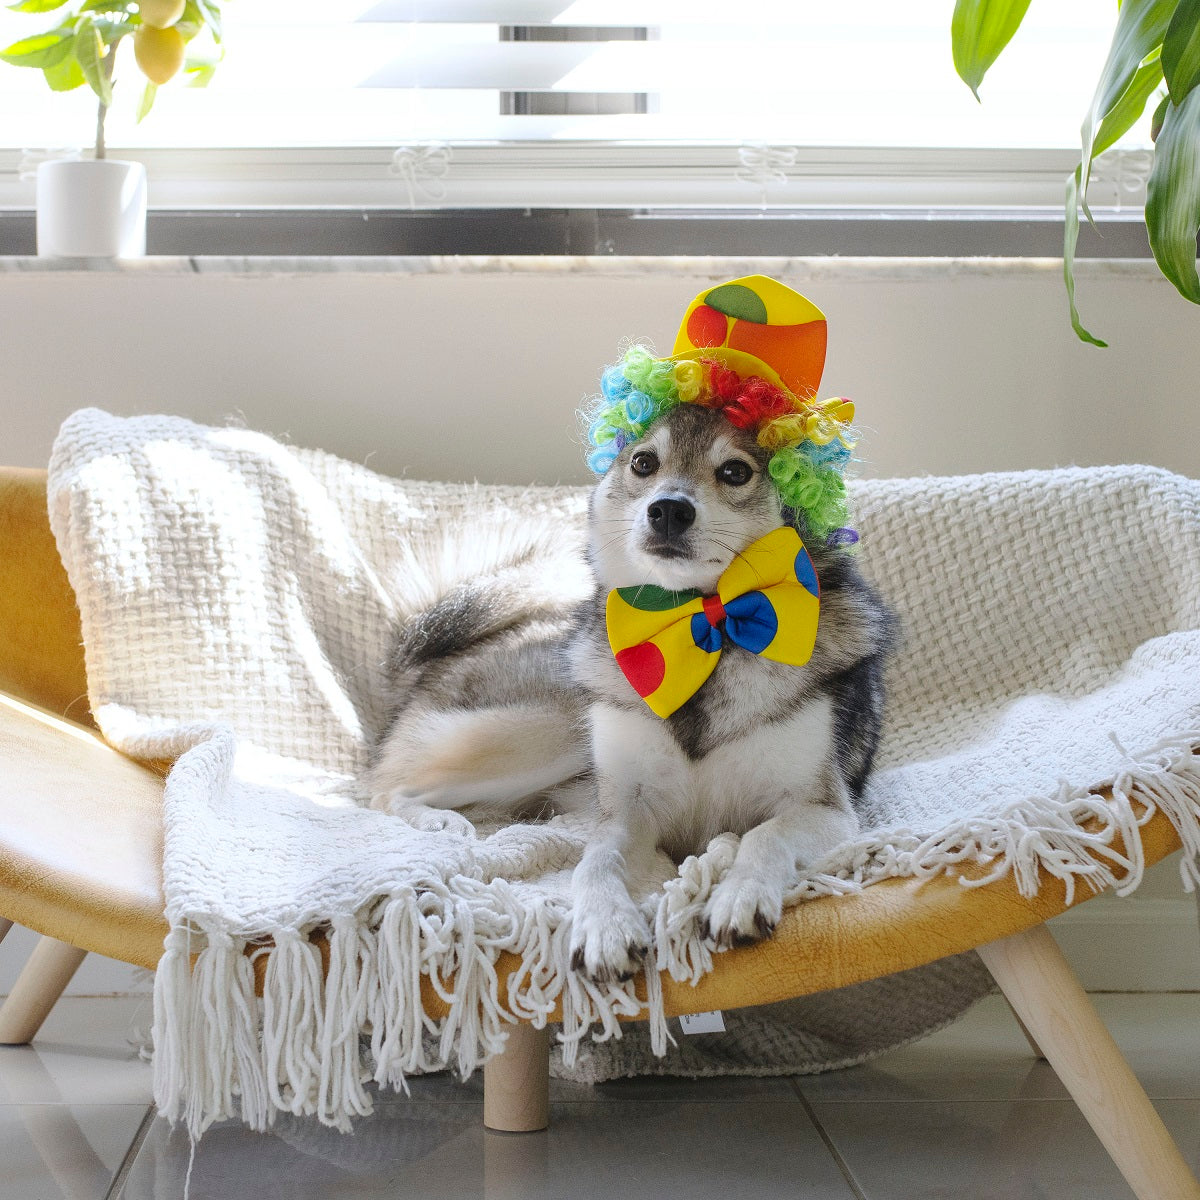 Midlee Clown Dog Costume Hat Wig & Bowtie